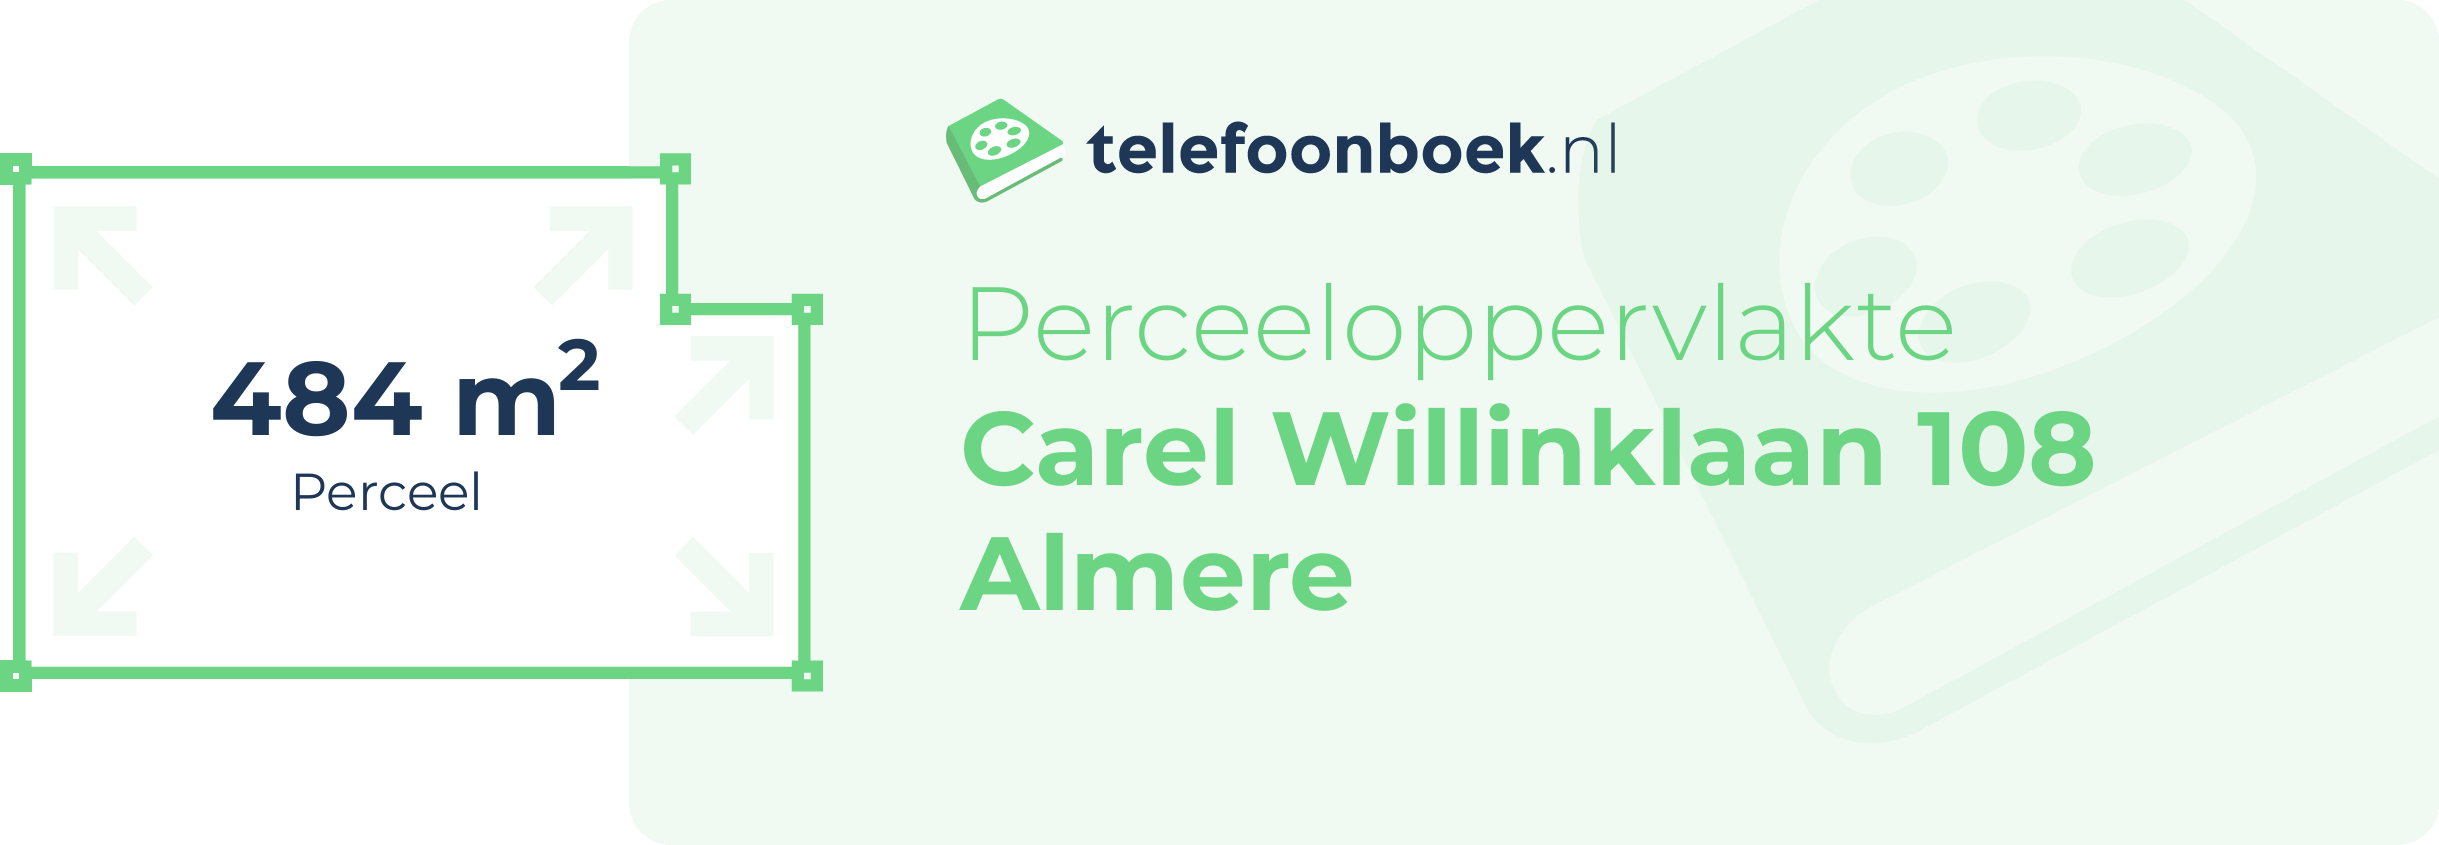 Perceeloppervlakte Carel Willinklaan 108 Almere